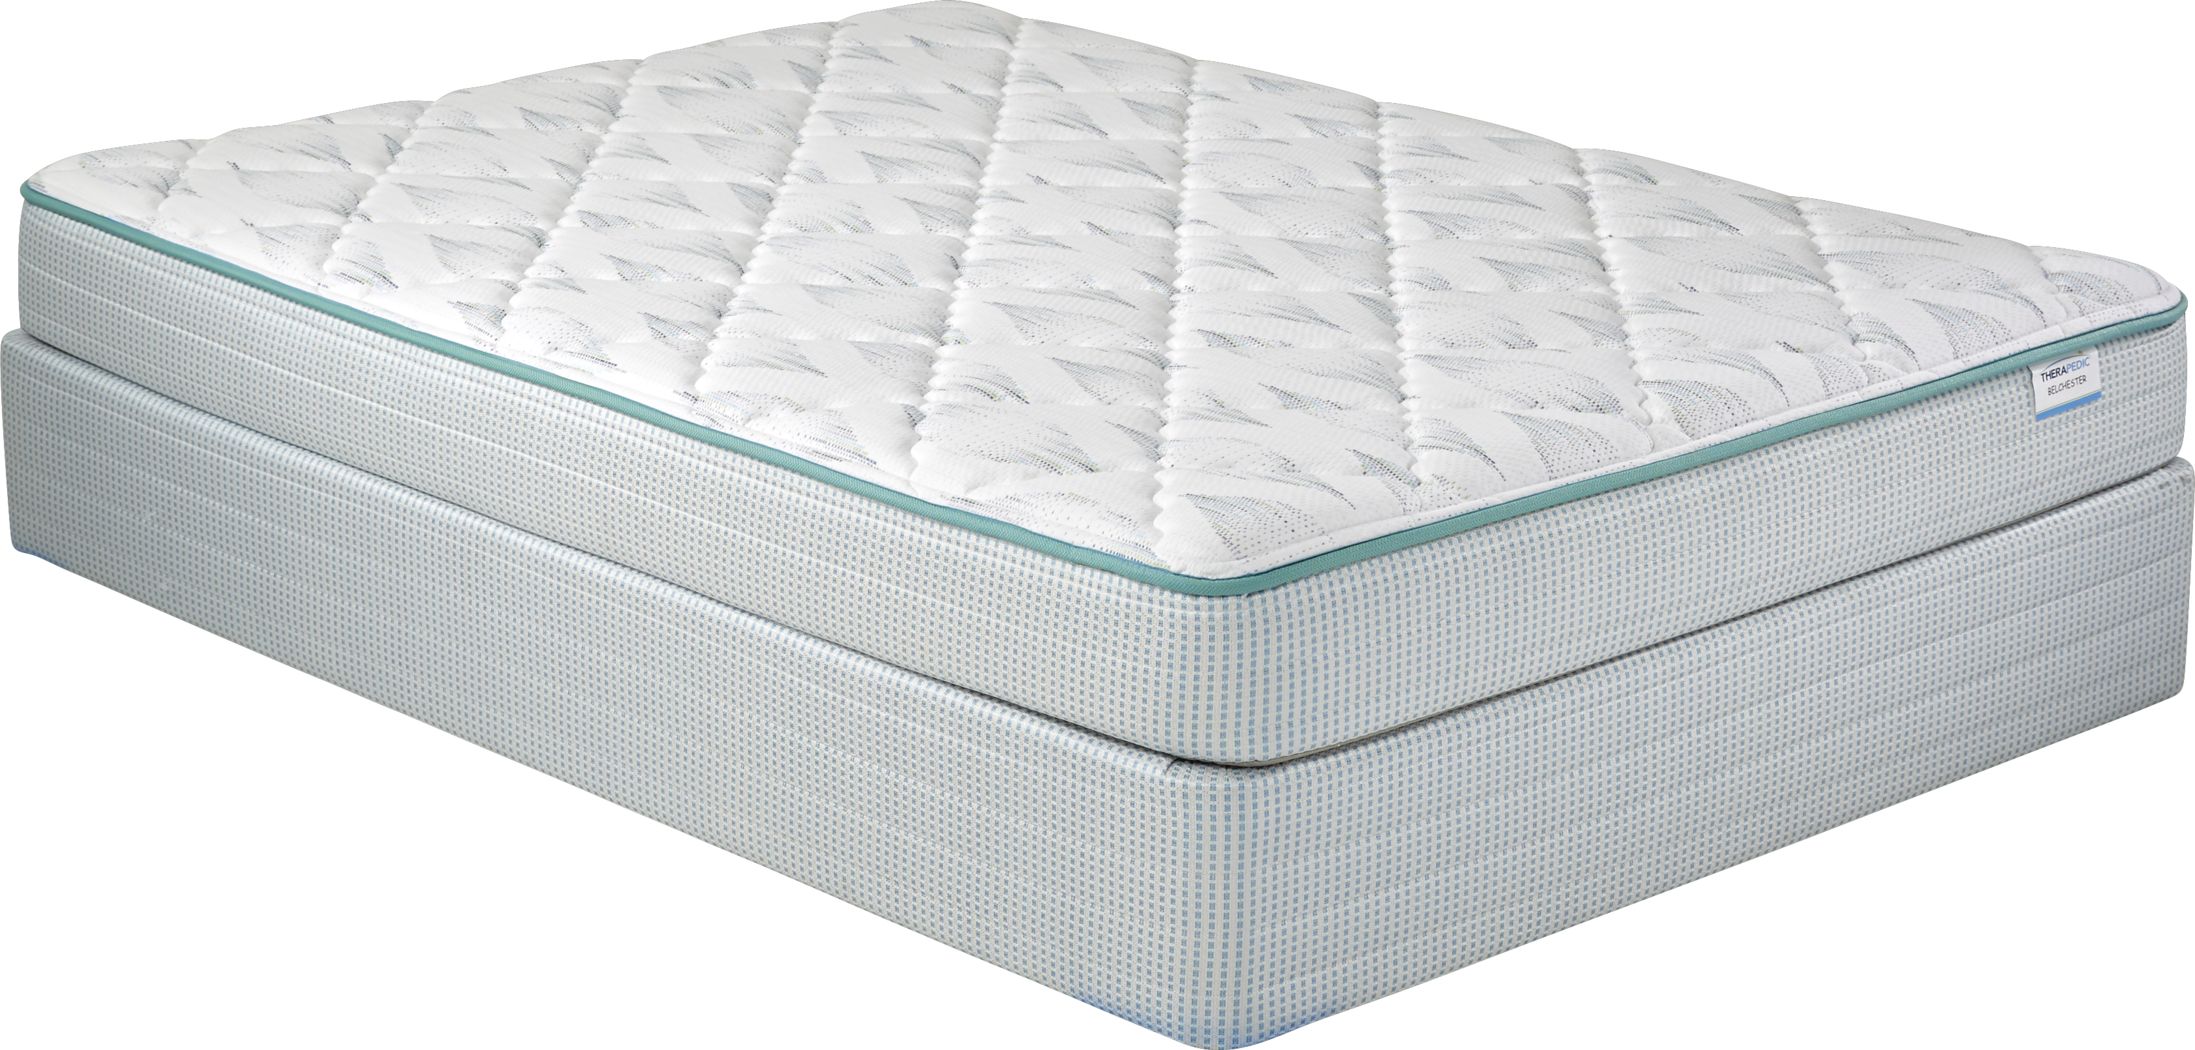 therapedic full size mattress